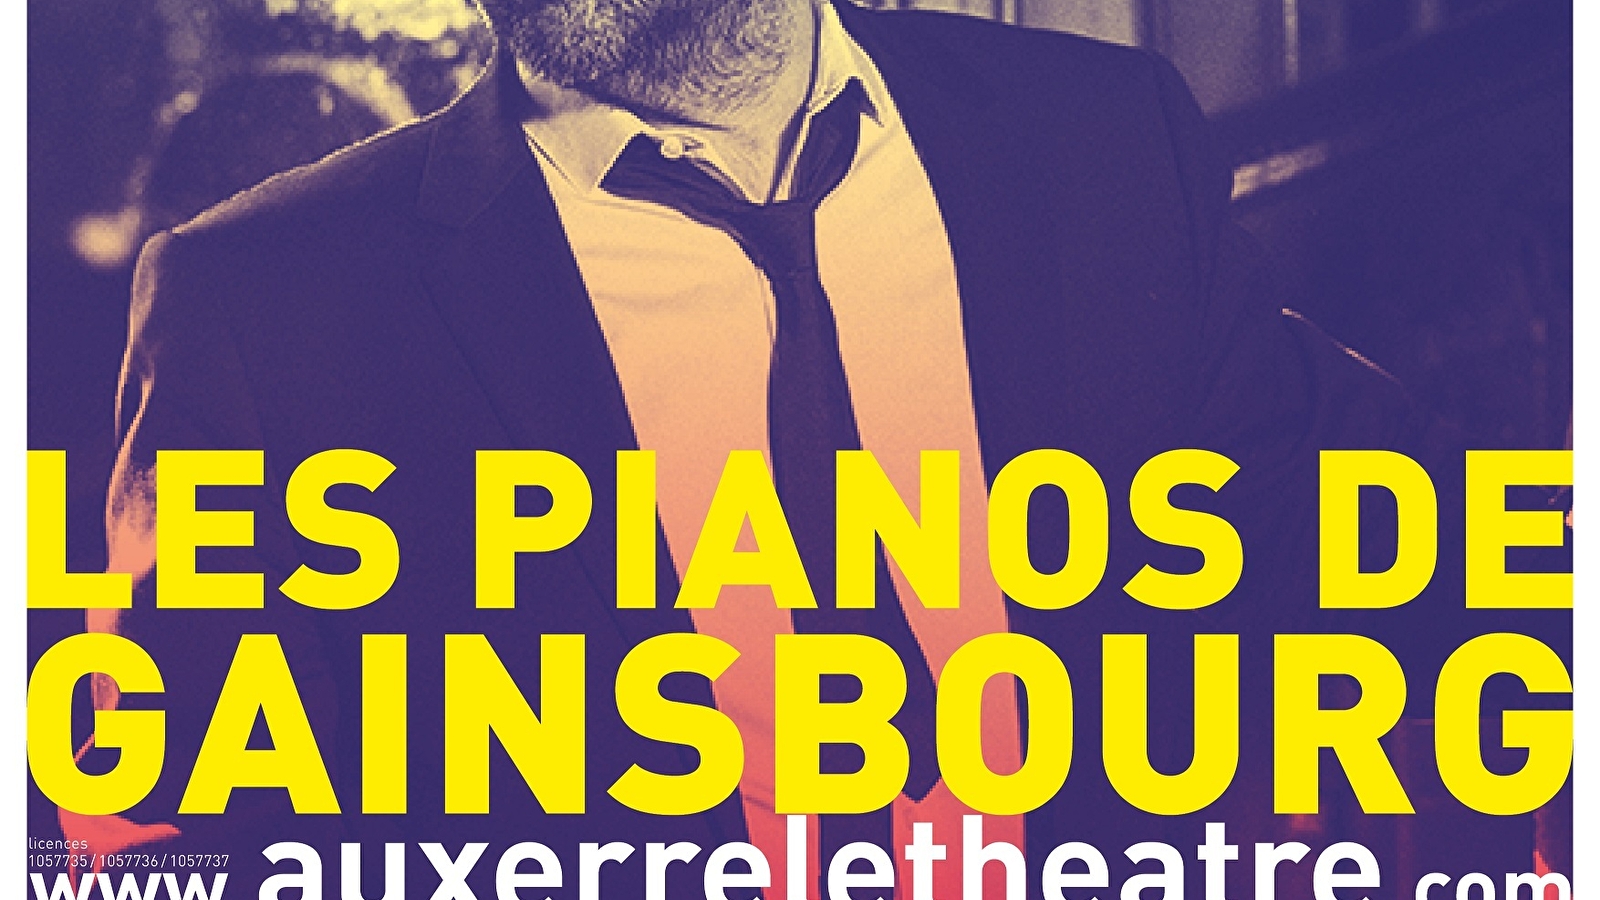 Les pianos de Gainsbourg